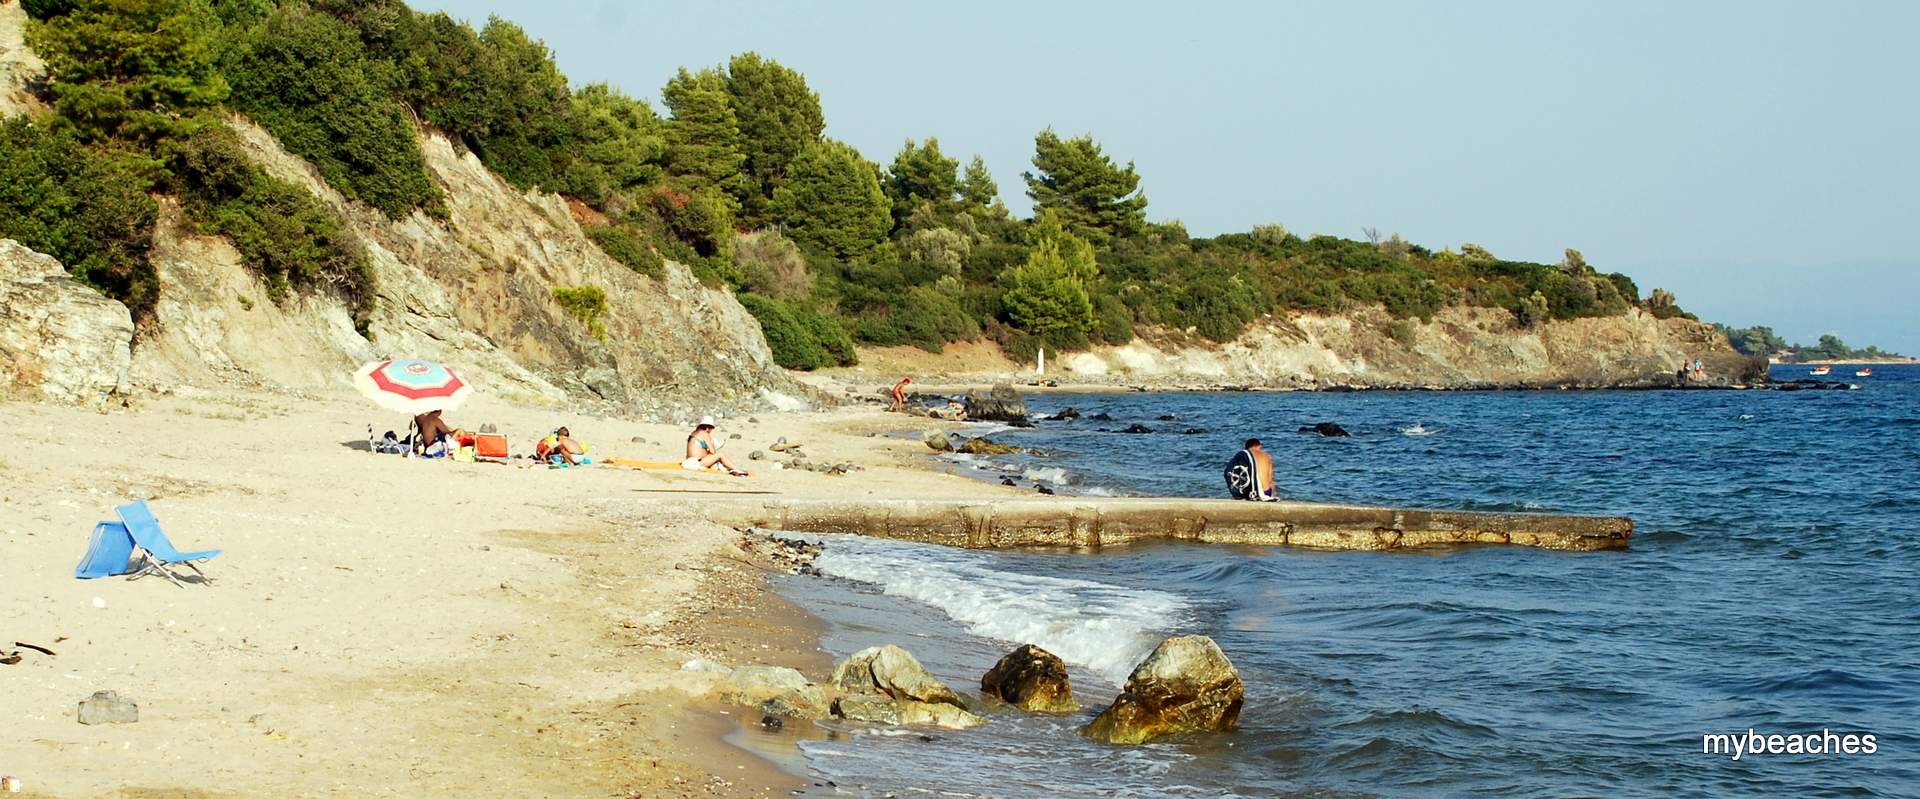 Βατοπέδι παραλία, Τορωναίος κόλπος, Χαλκιδική, Ελλάδα